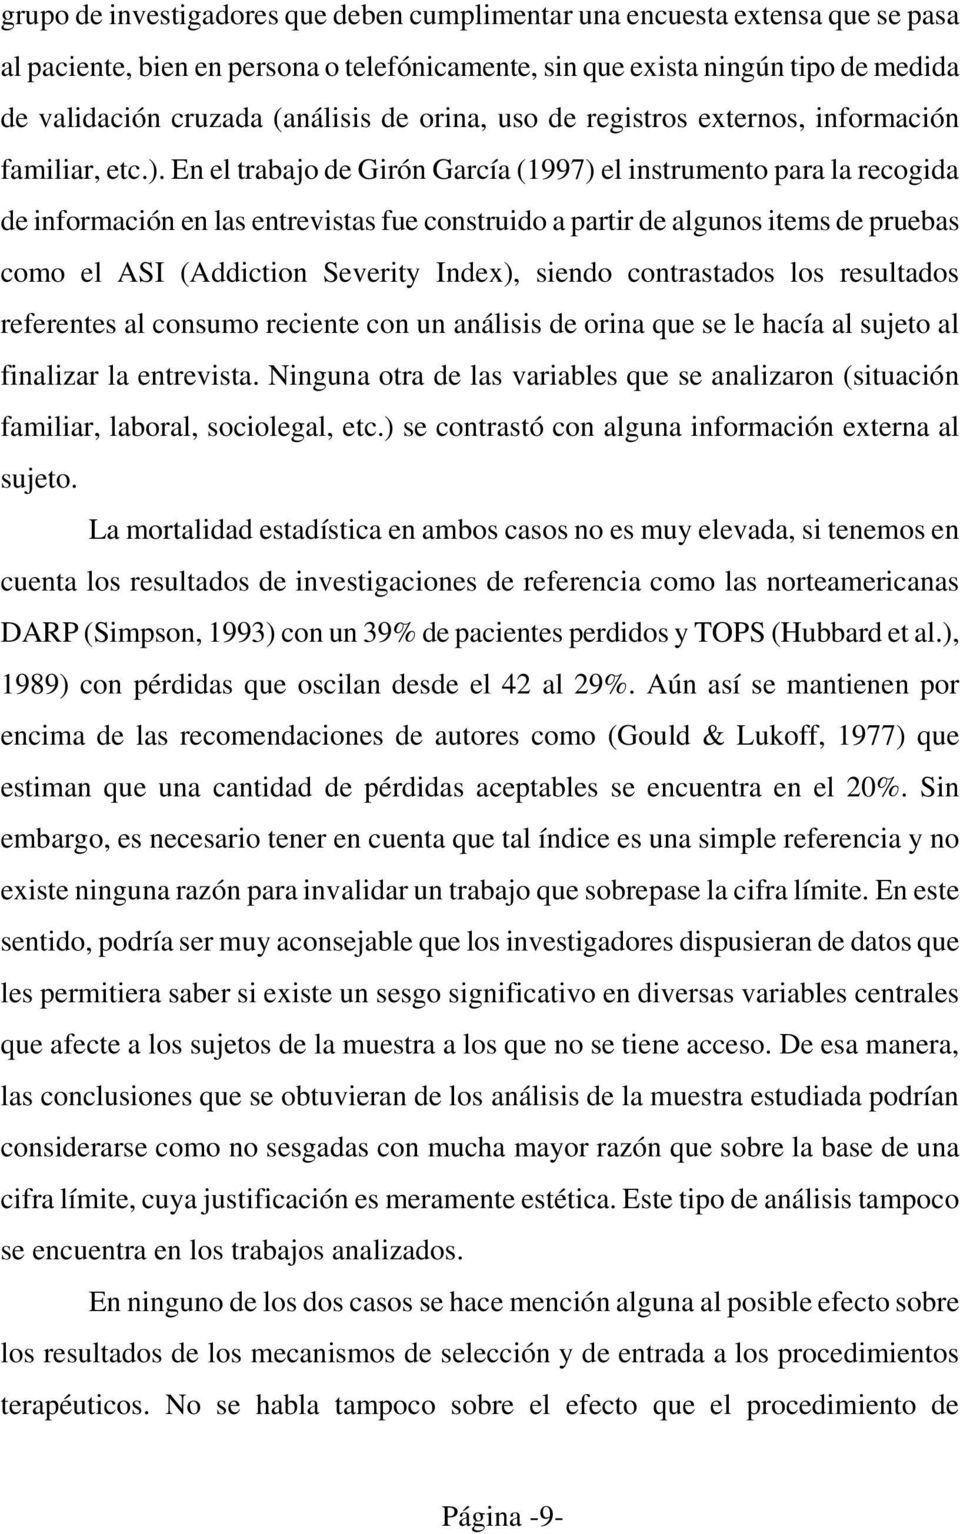 En el trabajo de Girón García (1997) el instrumento para la recogida de información en las entrevistas fue construido a partir de algunos items de pruebas como el ASI (Addiction Severity Index),